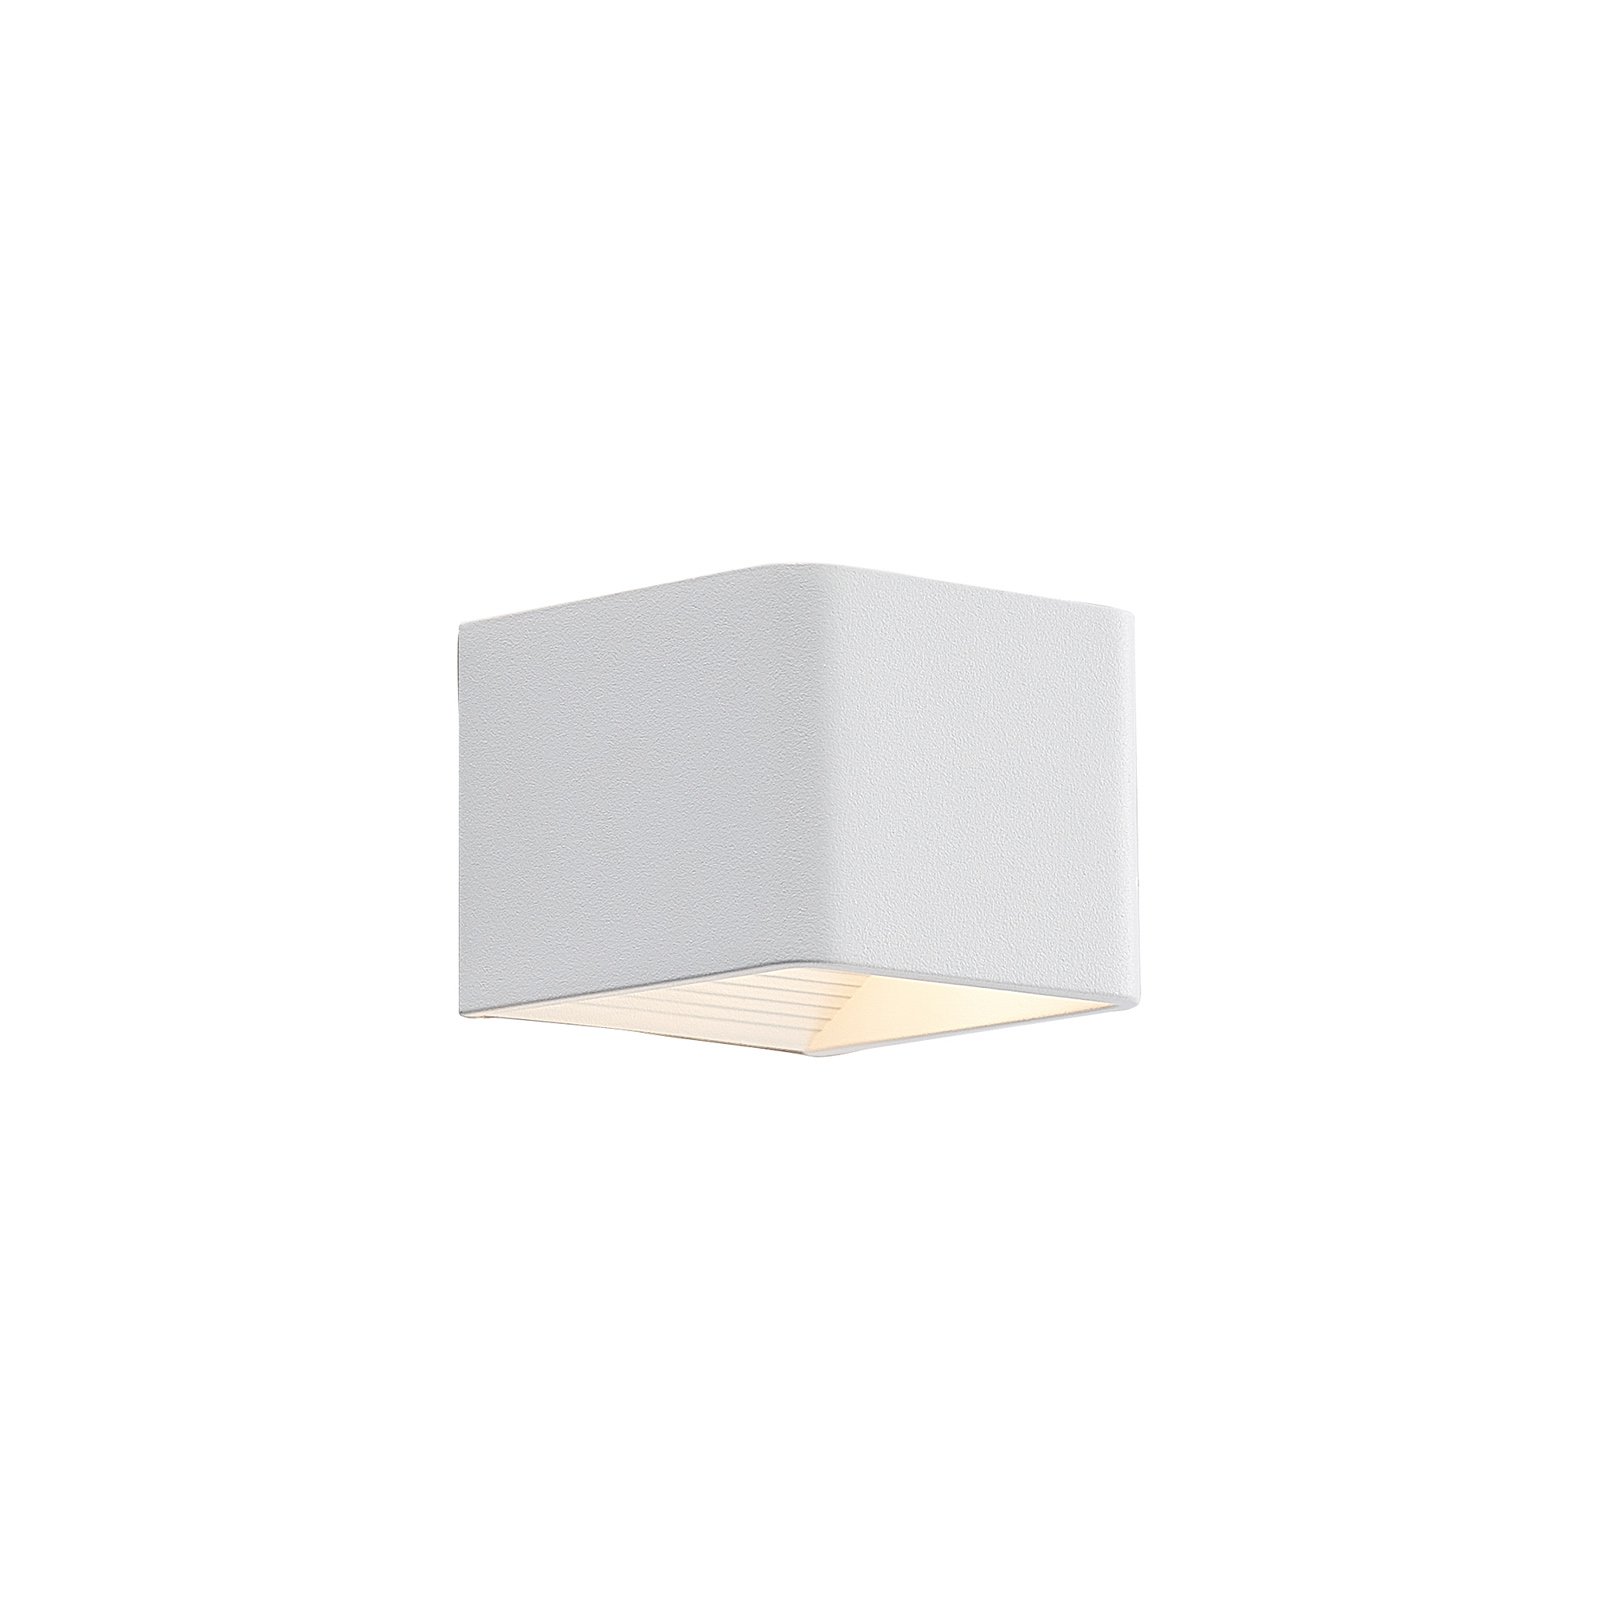 Arcchio Karam LED wall light, 10 cm, white